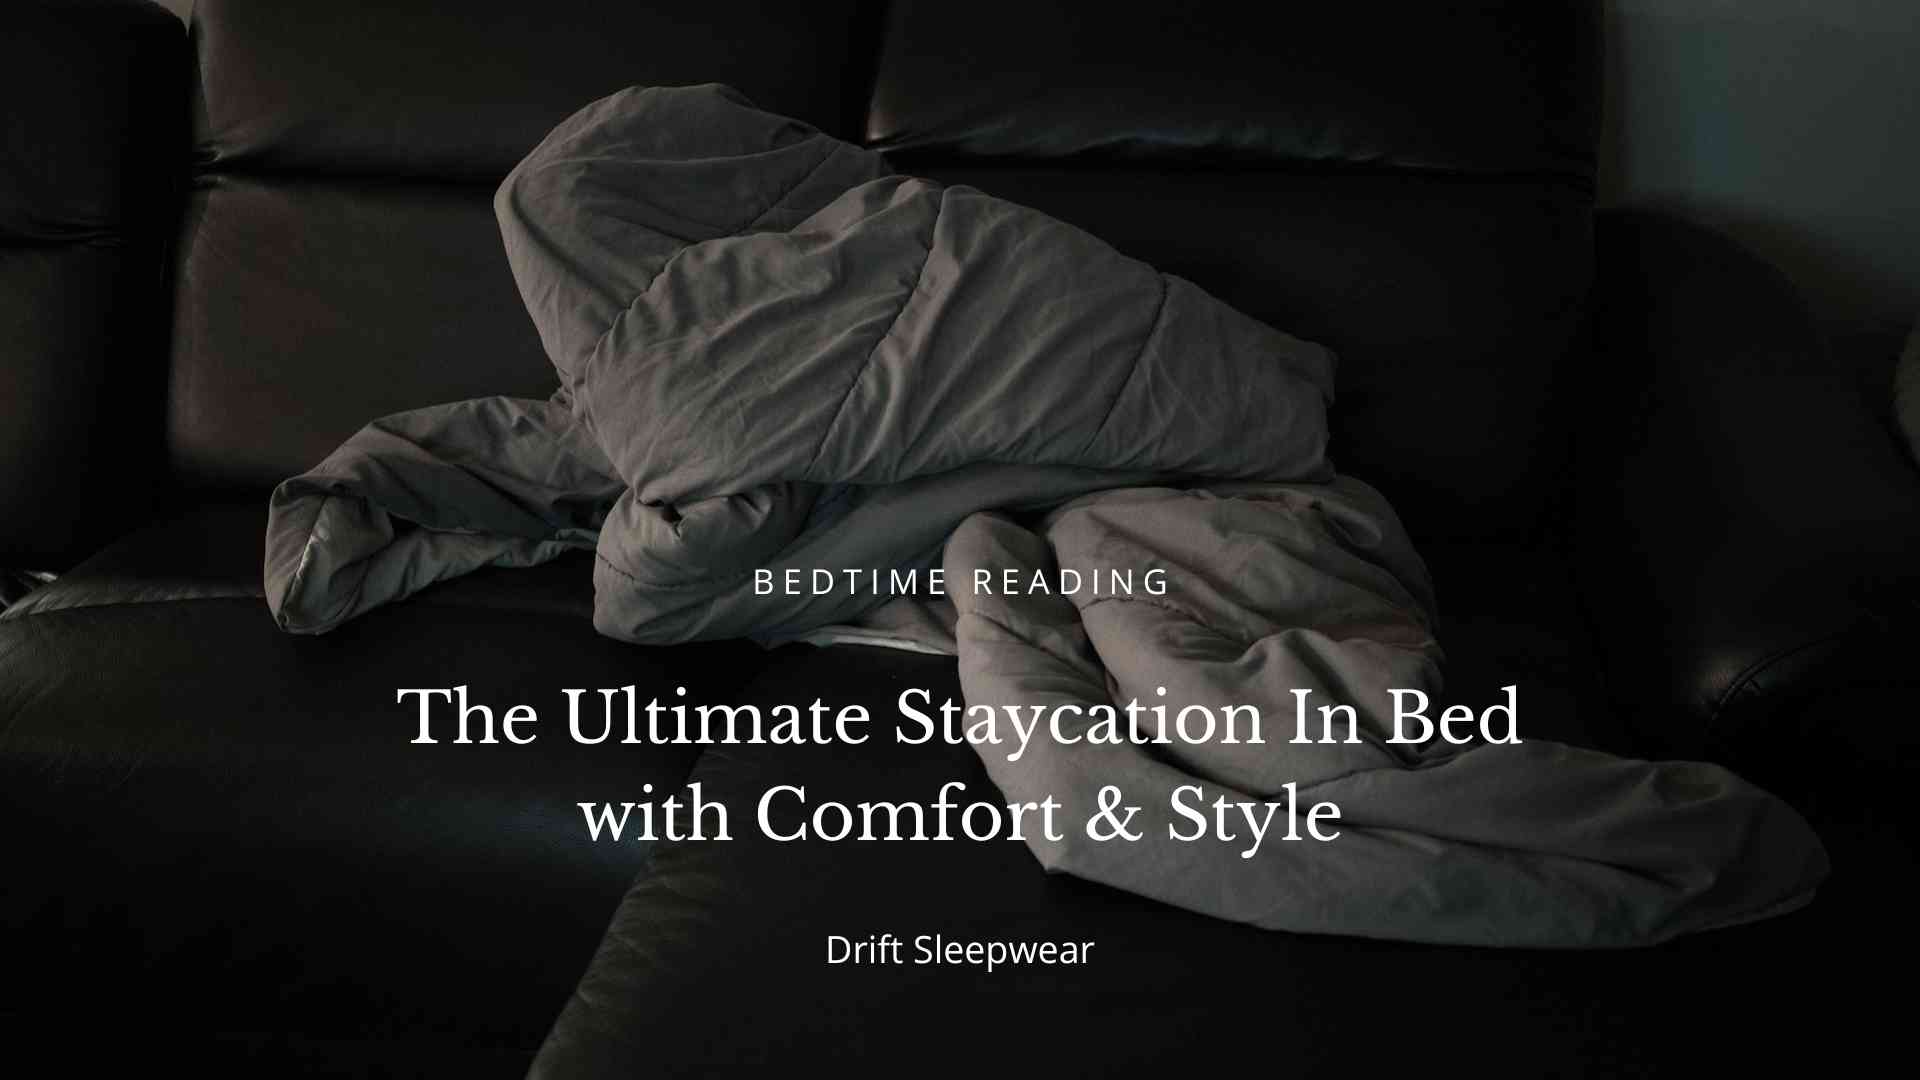 The Ultimate Staycation Blog Guide Drift Sleepwear